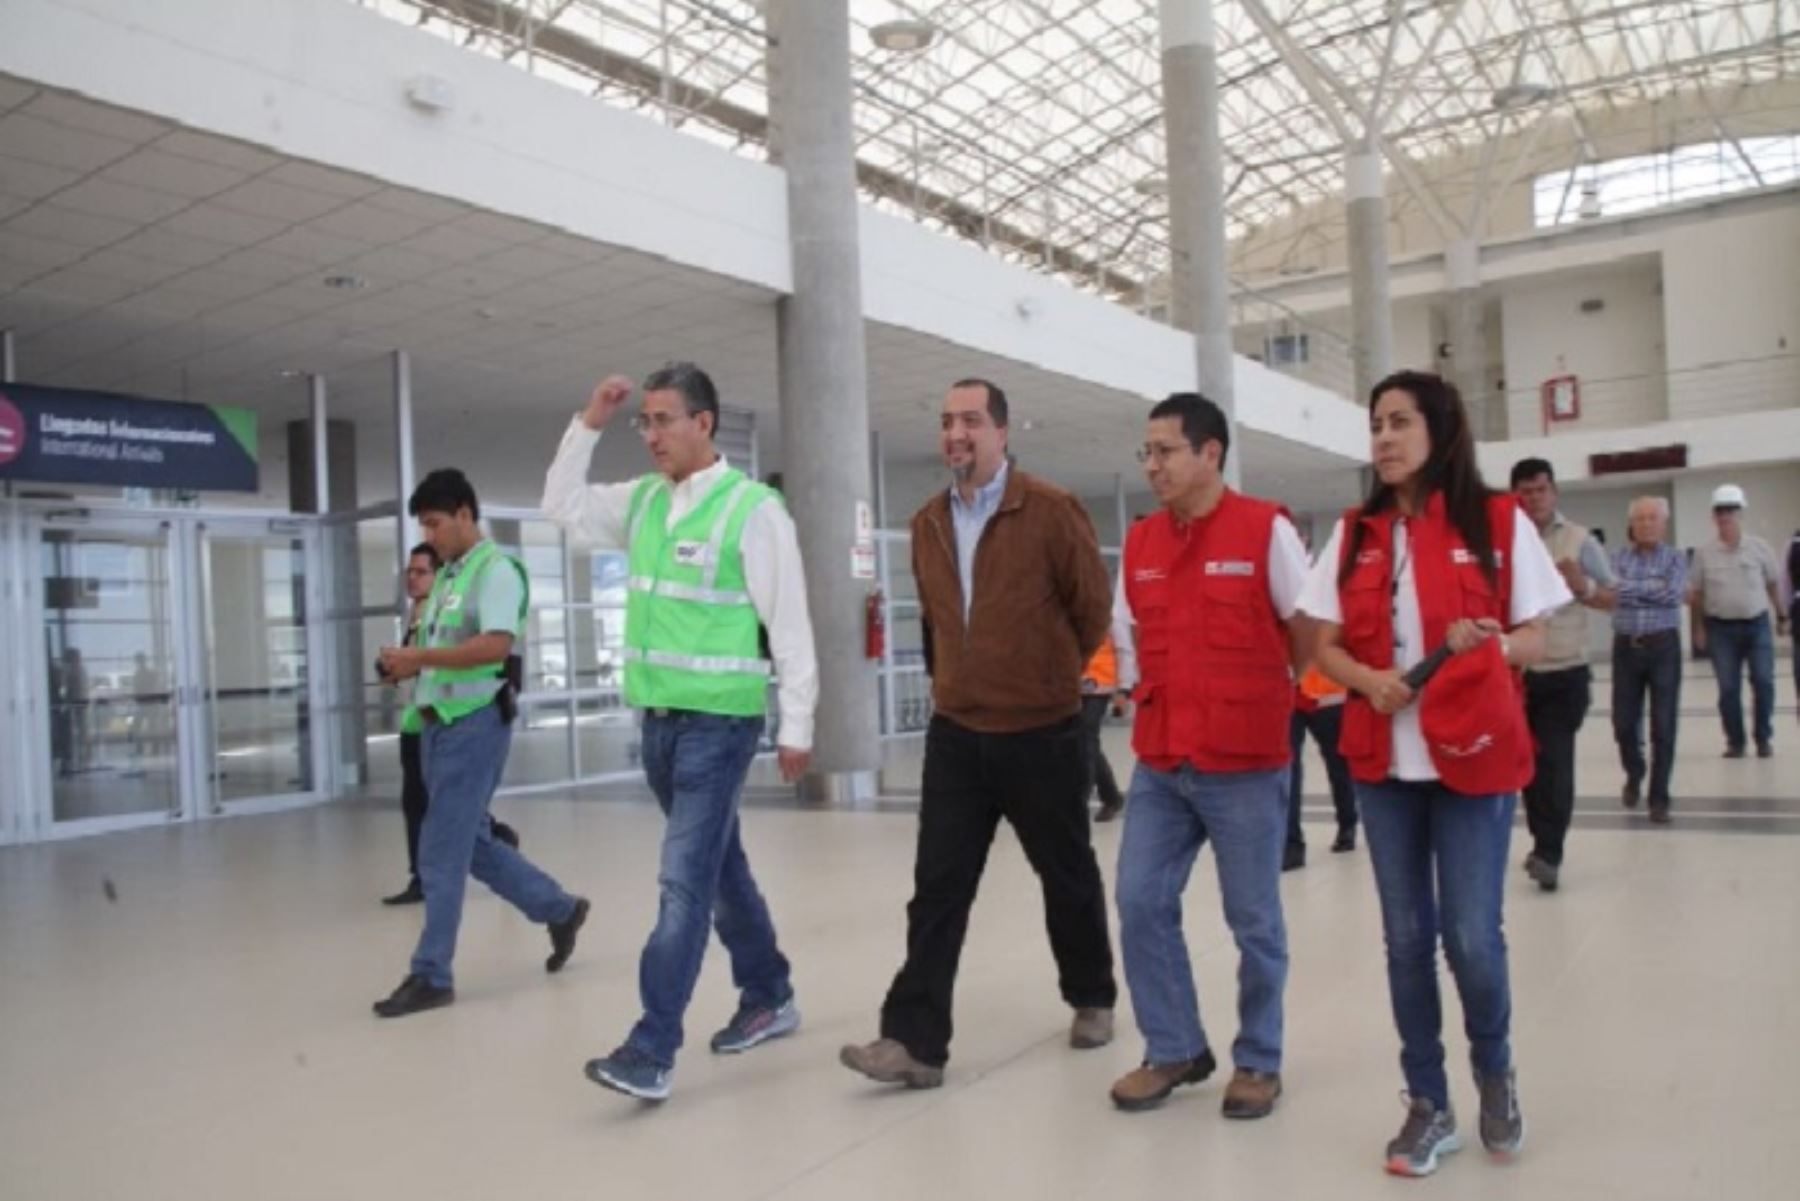 El Aeropuerto de Pisco recibe aproximadamente 65 000 pasajeros cada año. La capacidad de este terminal aéreo es diez veces mayor”, precisó el ministro de Transportes, EdmerTrujillo.